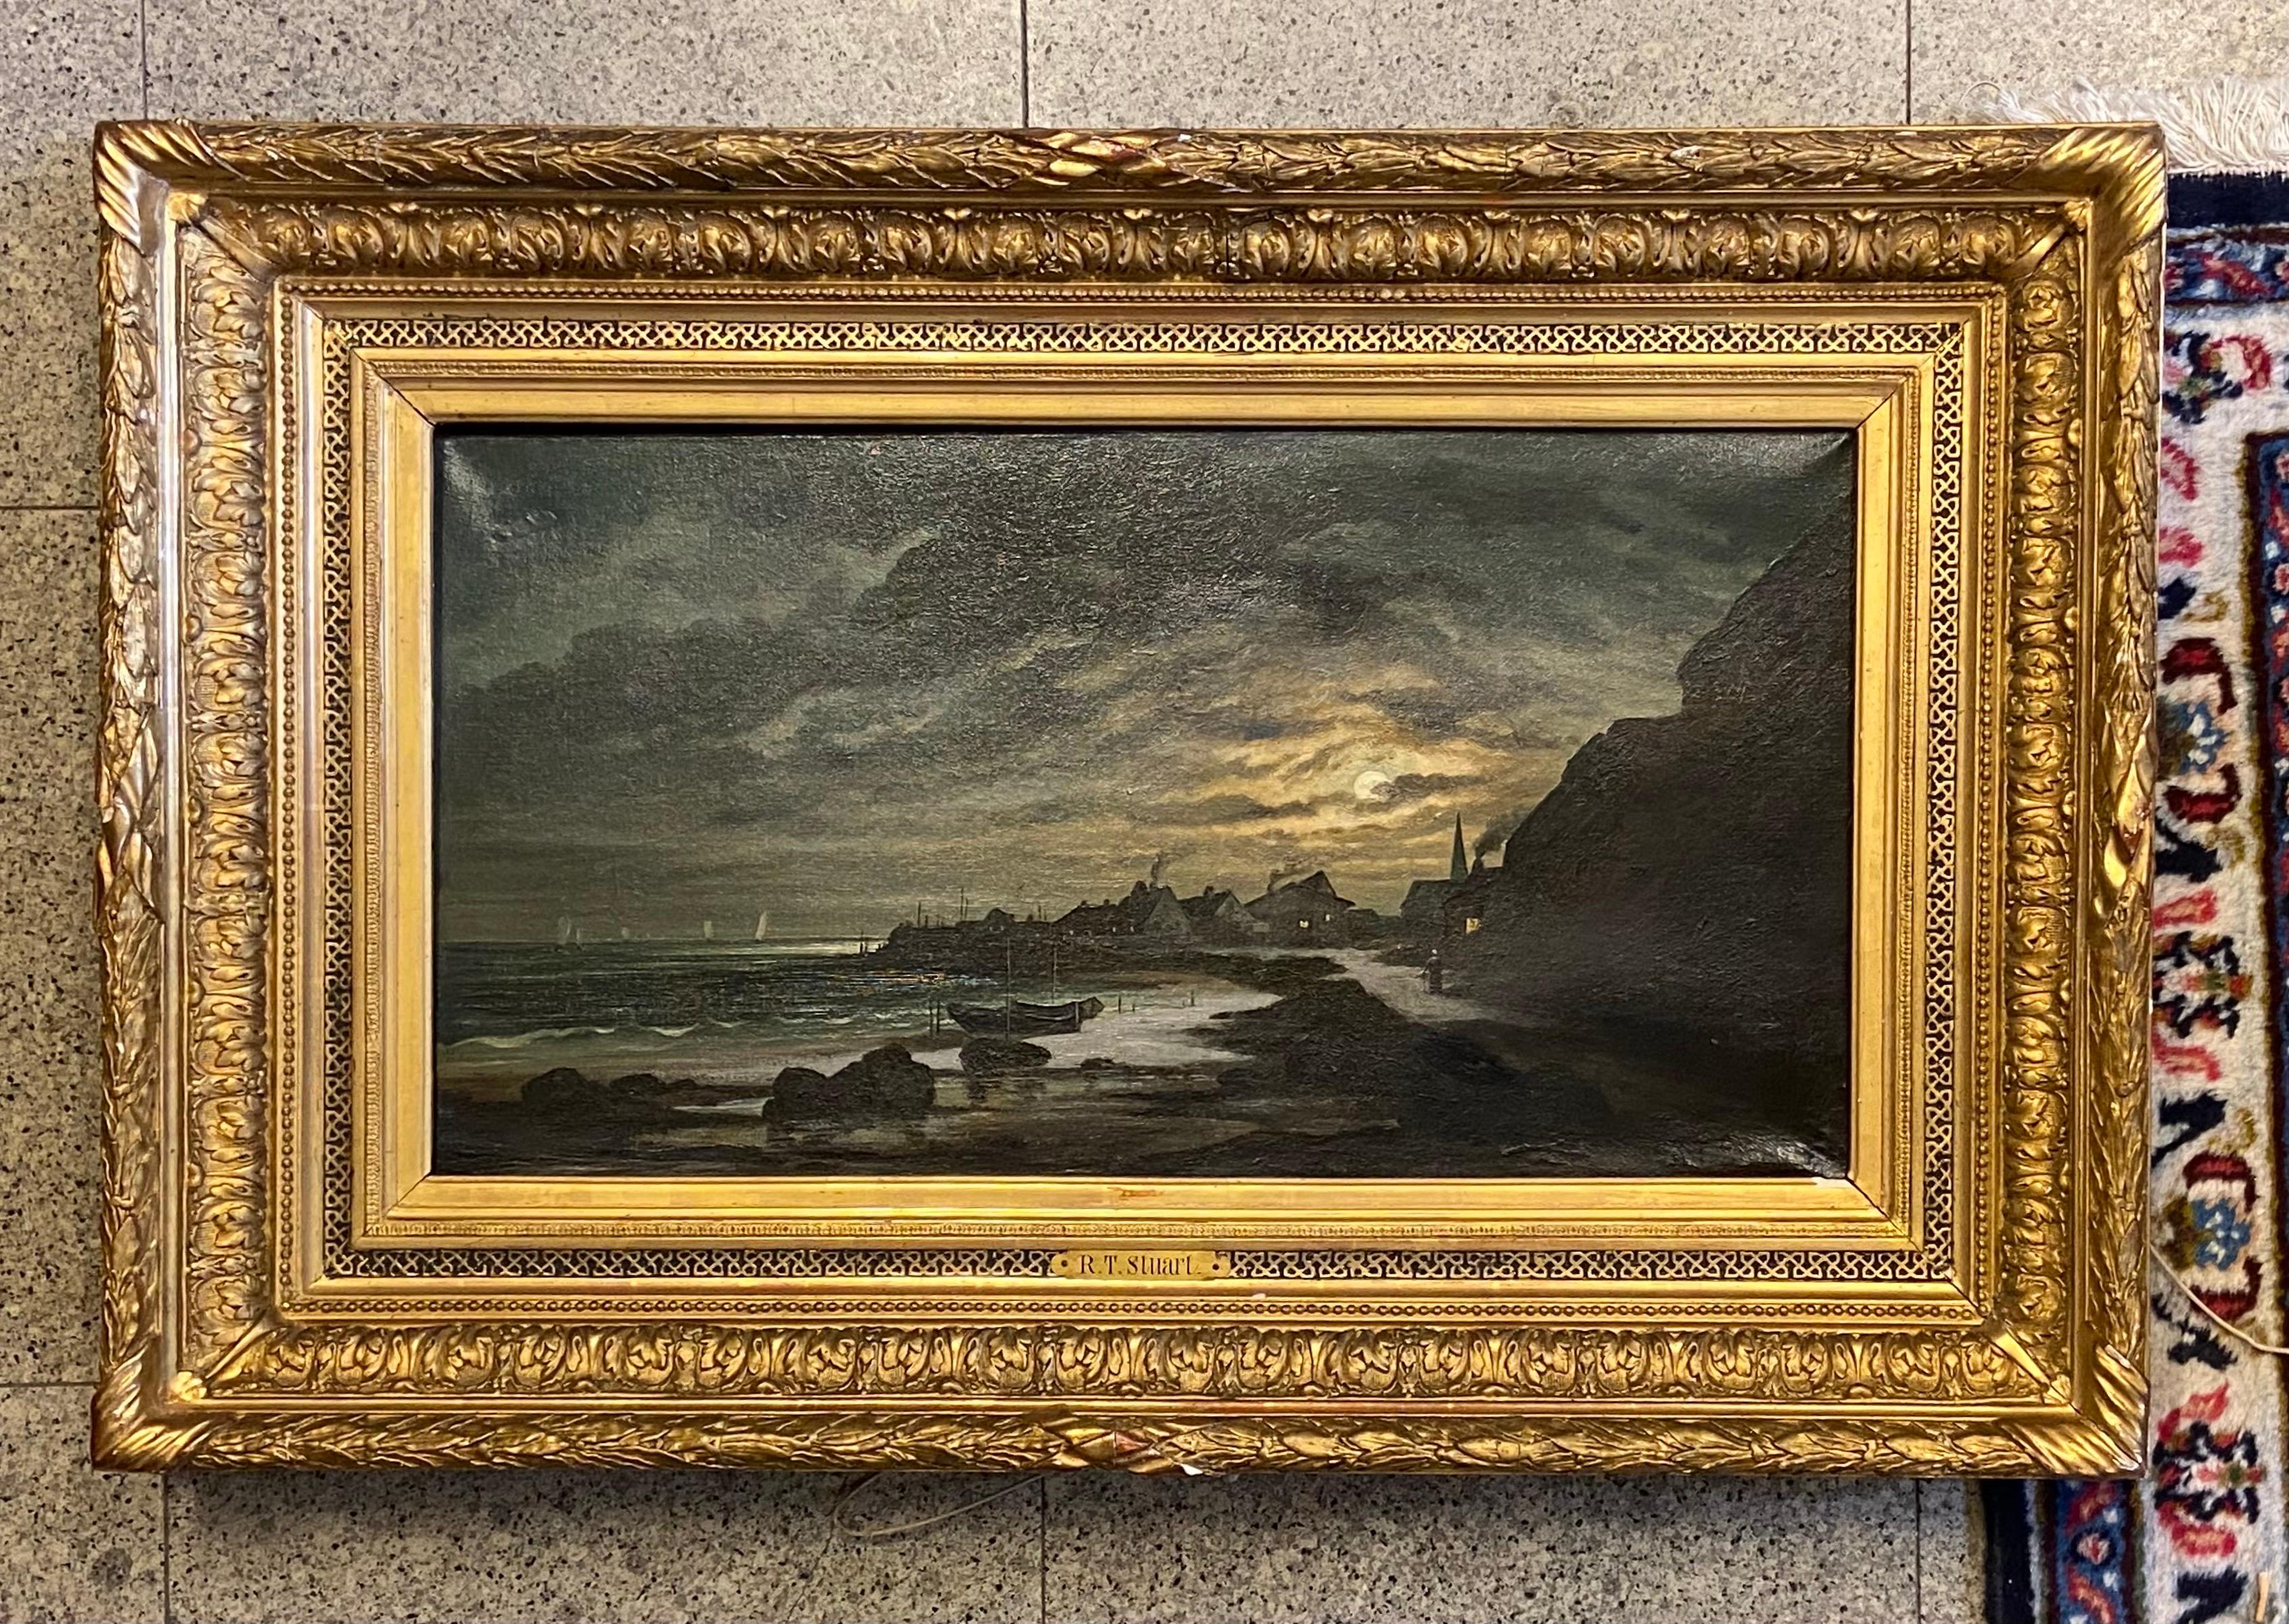 « Moonlight », huile sur toile, XIXe siècle par R. T. Stuart.
Le tableau est en bon état, pour signaler quelques anciennes restaurations sur la toile. Le cadre d'origine en bois et stuc doré est présenté dans une belle patine d'origine, pour mettre